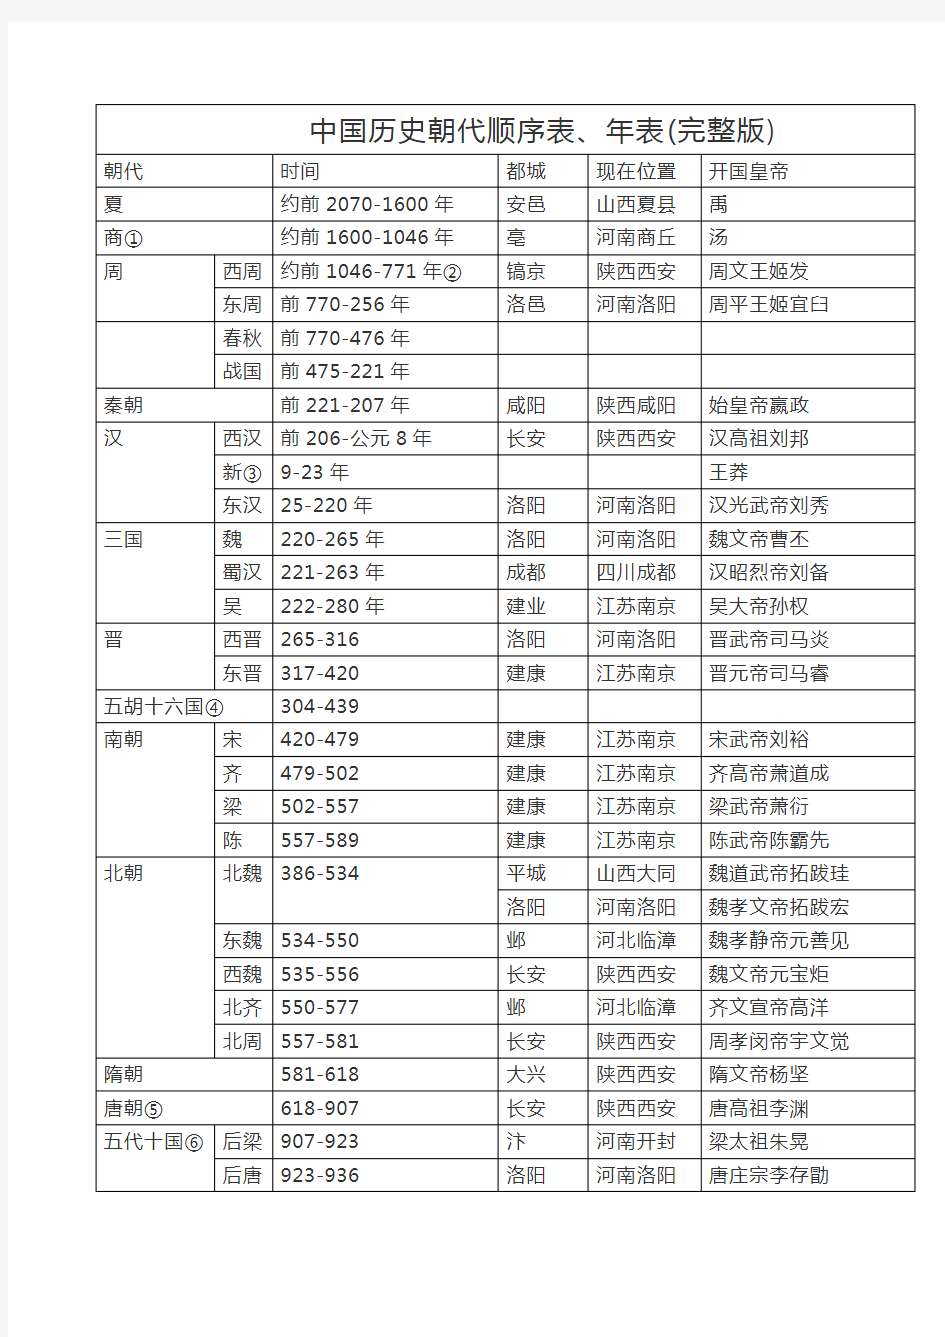 中国朝代顺序完整表 中国历史朝代顺序表